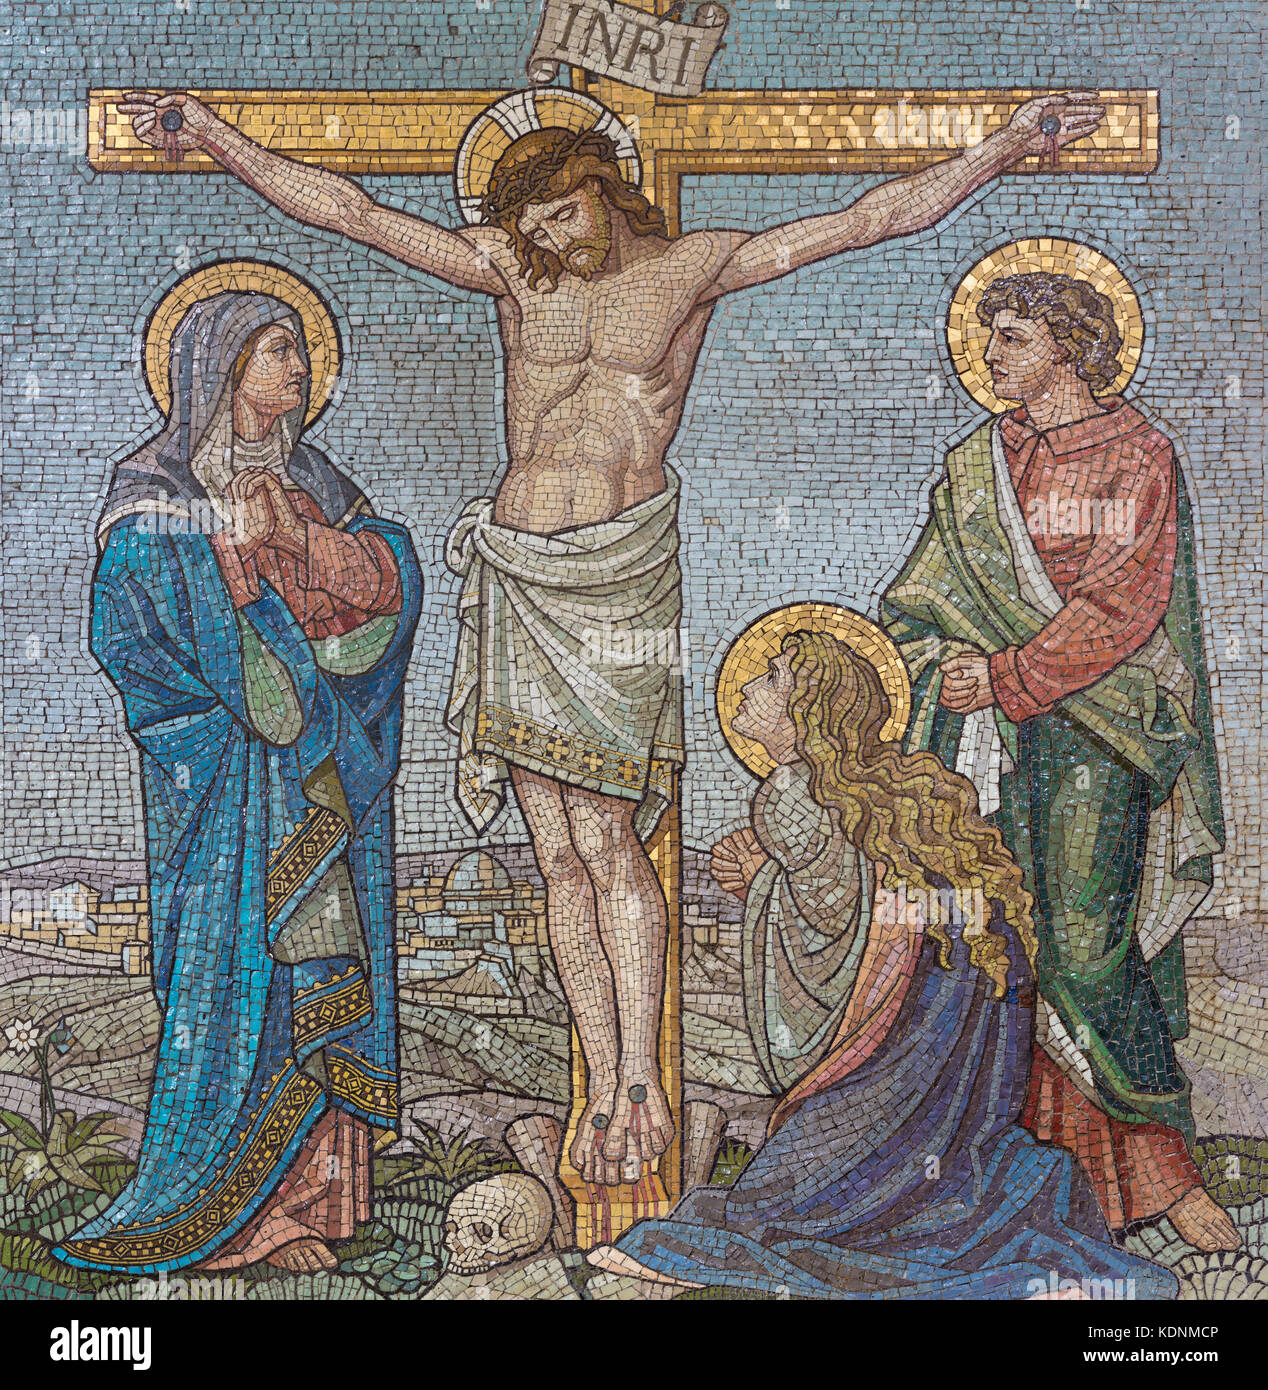 Londra, Gran Bretagna - 17 settembre 2017: il mosaico della crocifissione nella chiesa di San Barnaba da bodley e garner (fine 19. cent.). Foto Stock